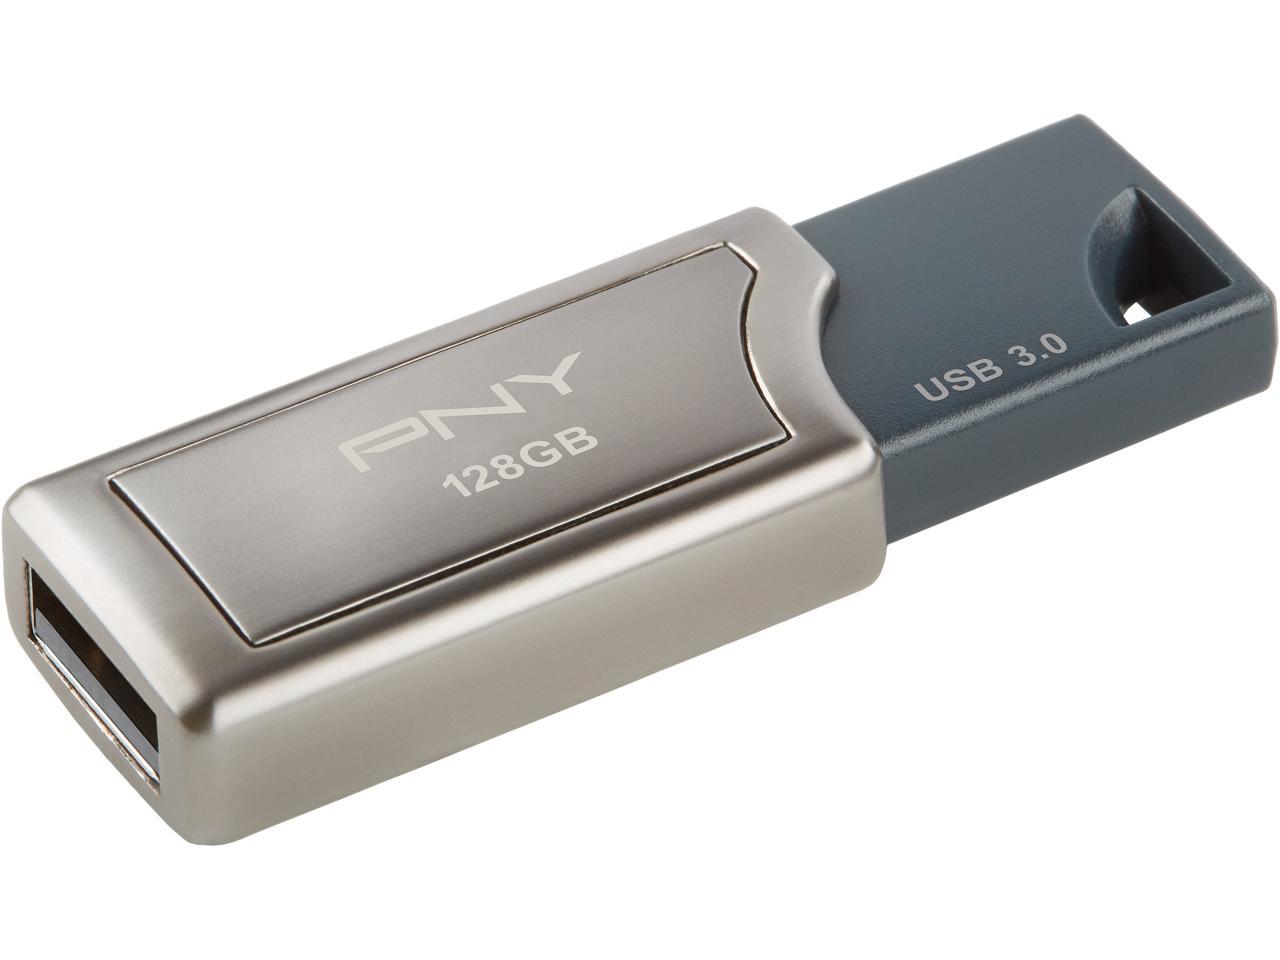 PNY 128GB Pro Elite USB 3.0 Speed Up to 400MB/s (P-FD128PRO-GE) Newegg.com